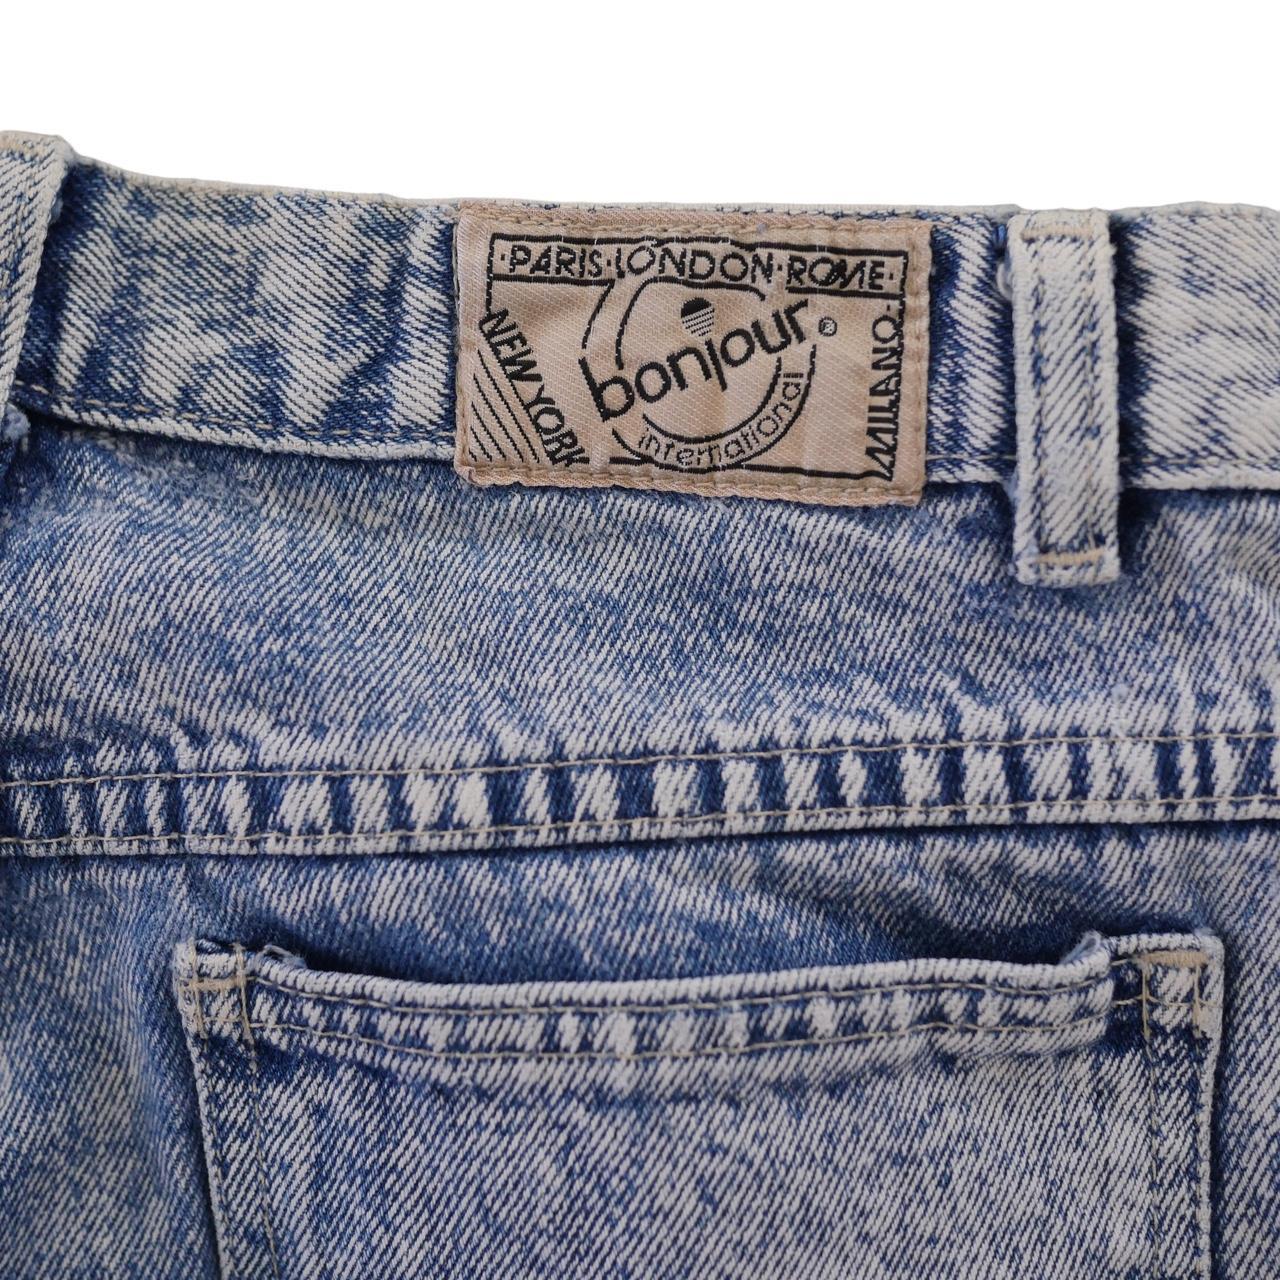 Product Image 3 - Bonjour Acid Wash jeans
8/10

28 x